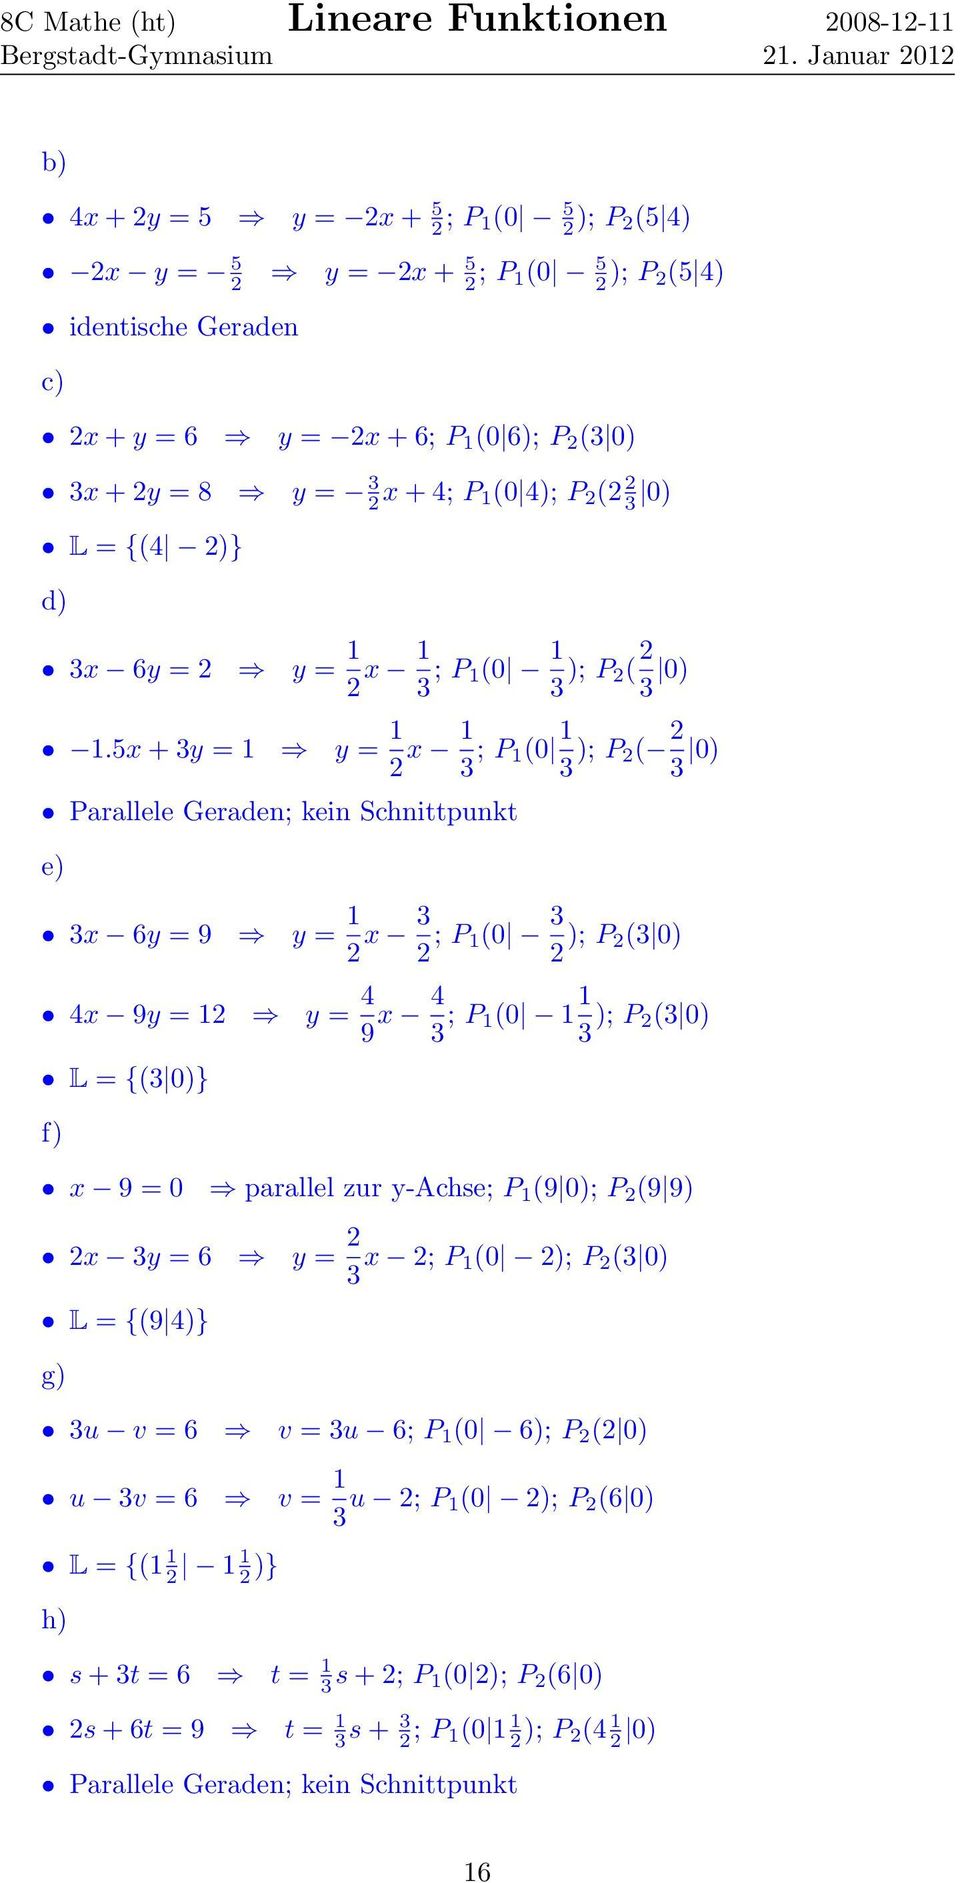 5x + 3y = 1 y = 1 2 x 1 3 ; P 1(0 1 3 ); P 2( 2 3 0) Parallele Geraden; kein Schnittpunkt e) 3x 6y = 9 y = 1 2 x 3 2 ; P 1(0 3 2 ); P 2(3 0) 4x 9y = 12 y = 4 9 x 4 3 ; P 1(0 1 1 3 ); P 2(3 0) L = {(3